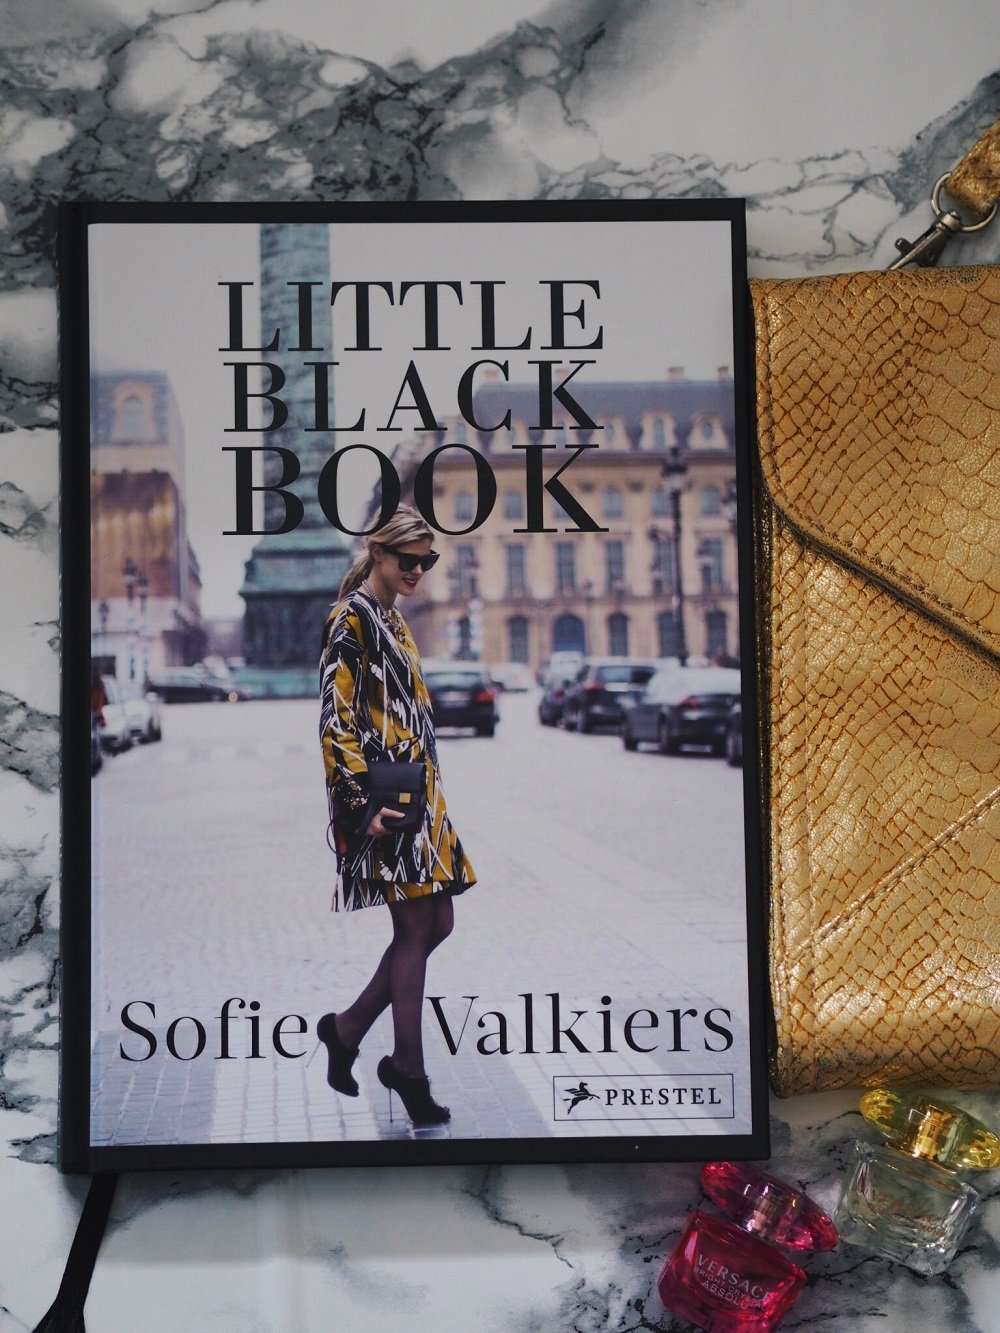 Heute rezensiere ich zwei interessante Bücher von Wolfgang Joop und Sofie Valkiers in meinem Blog-Dresscode und The Little Black Book für Fashionblogger 